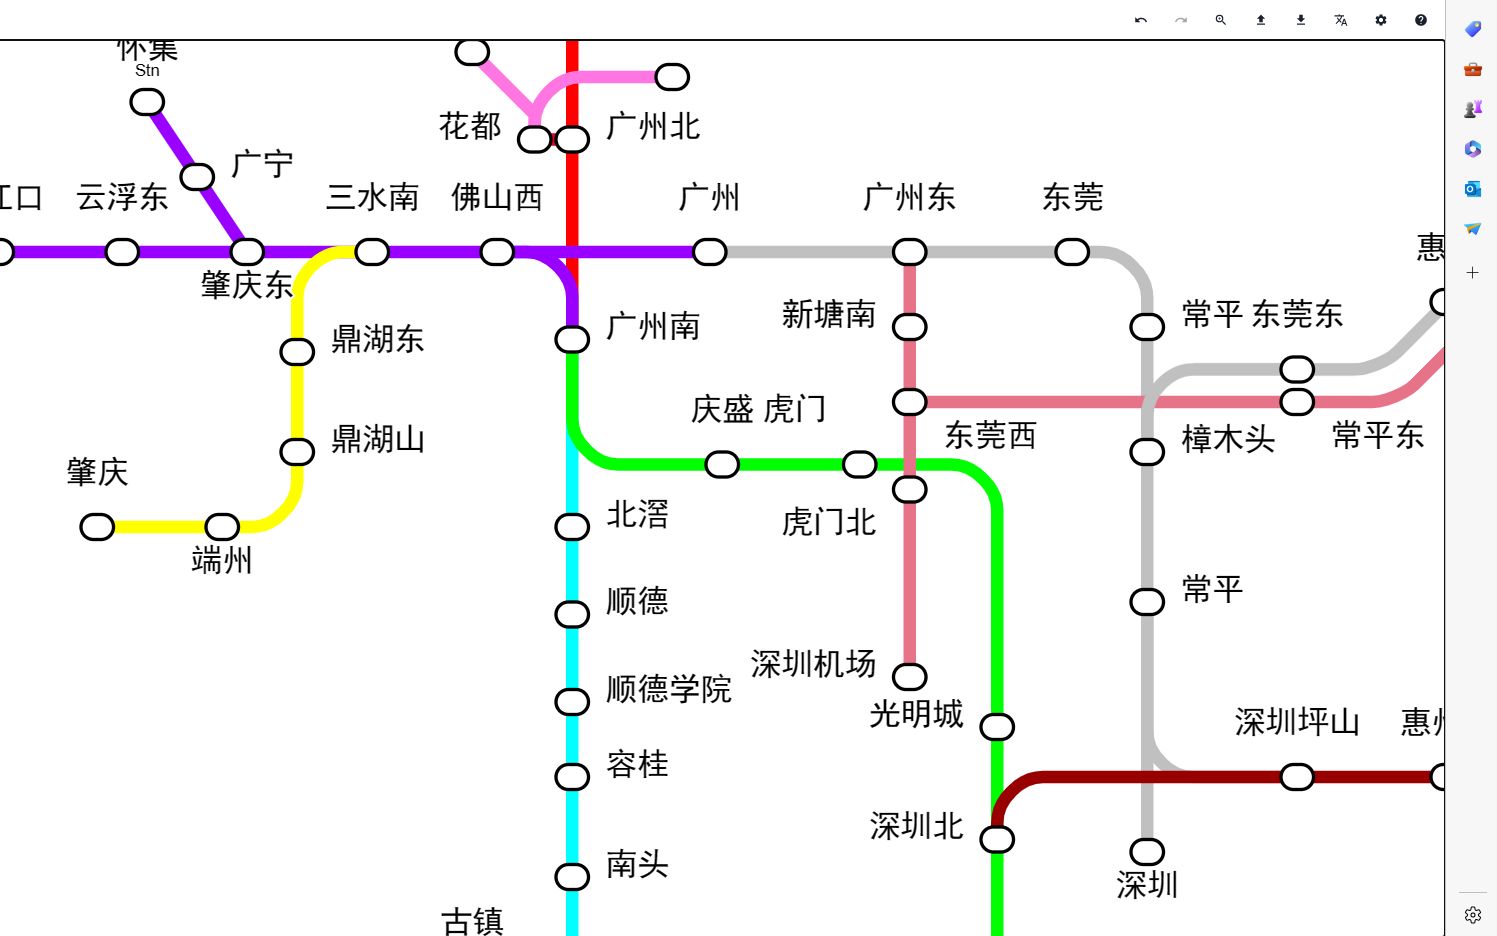 广州地铁广东城际图片